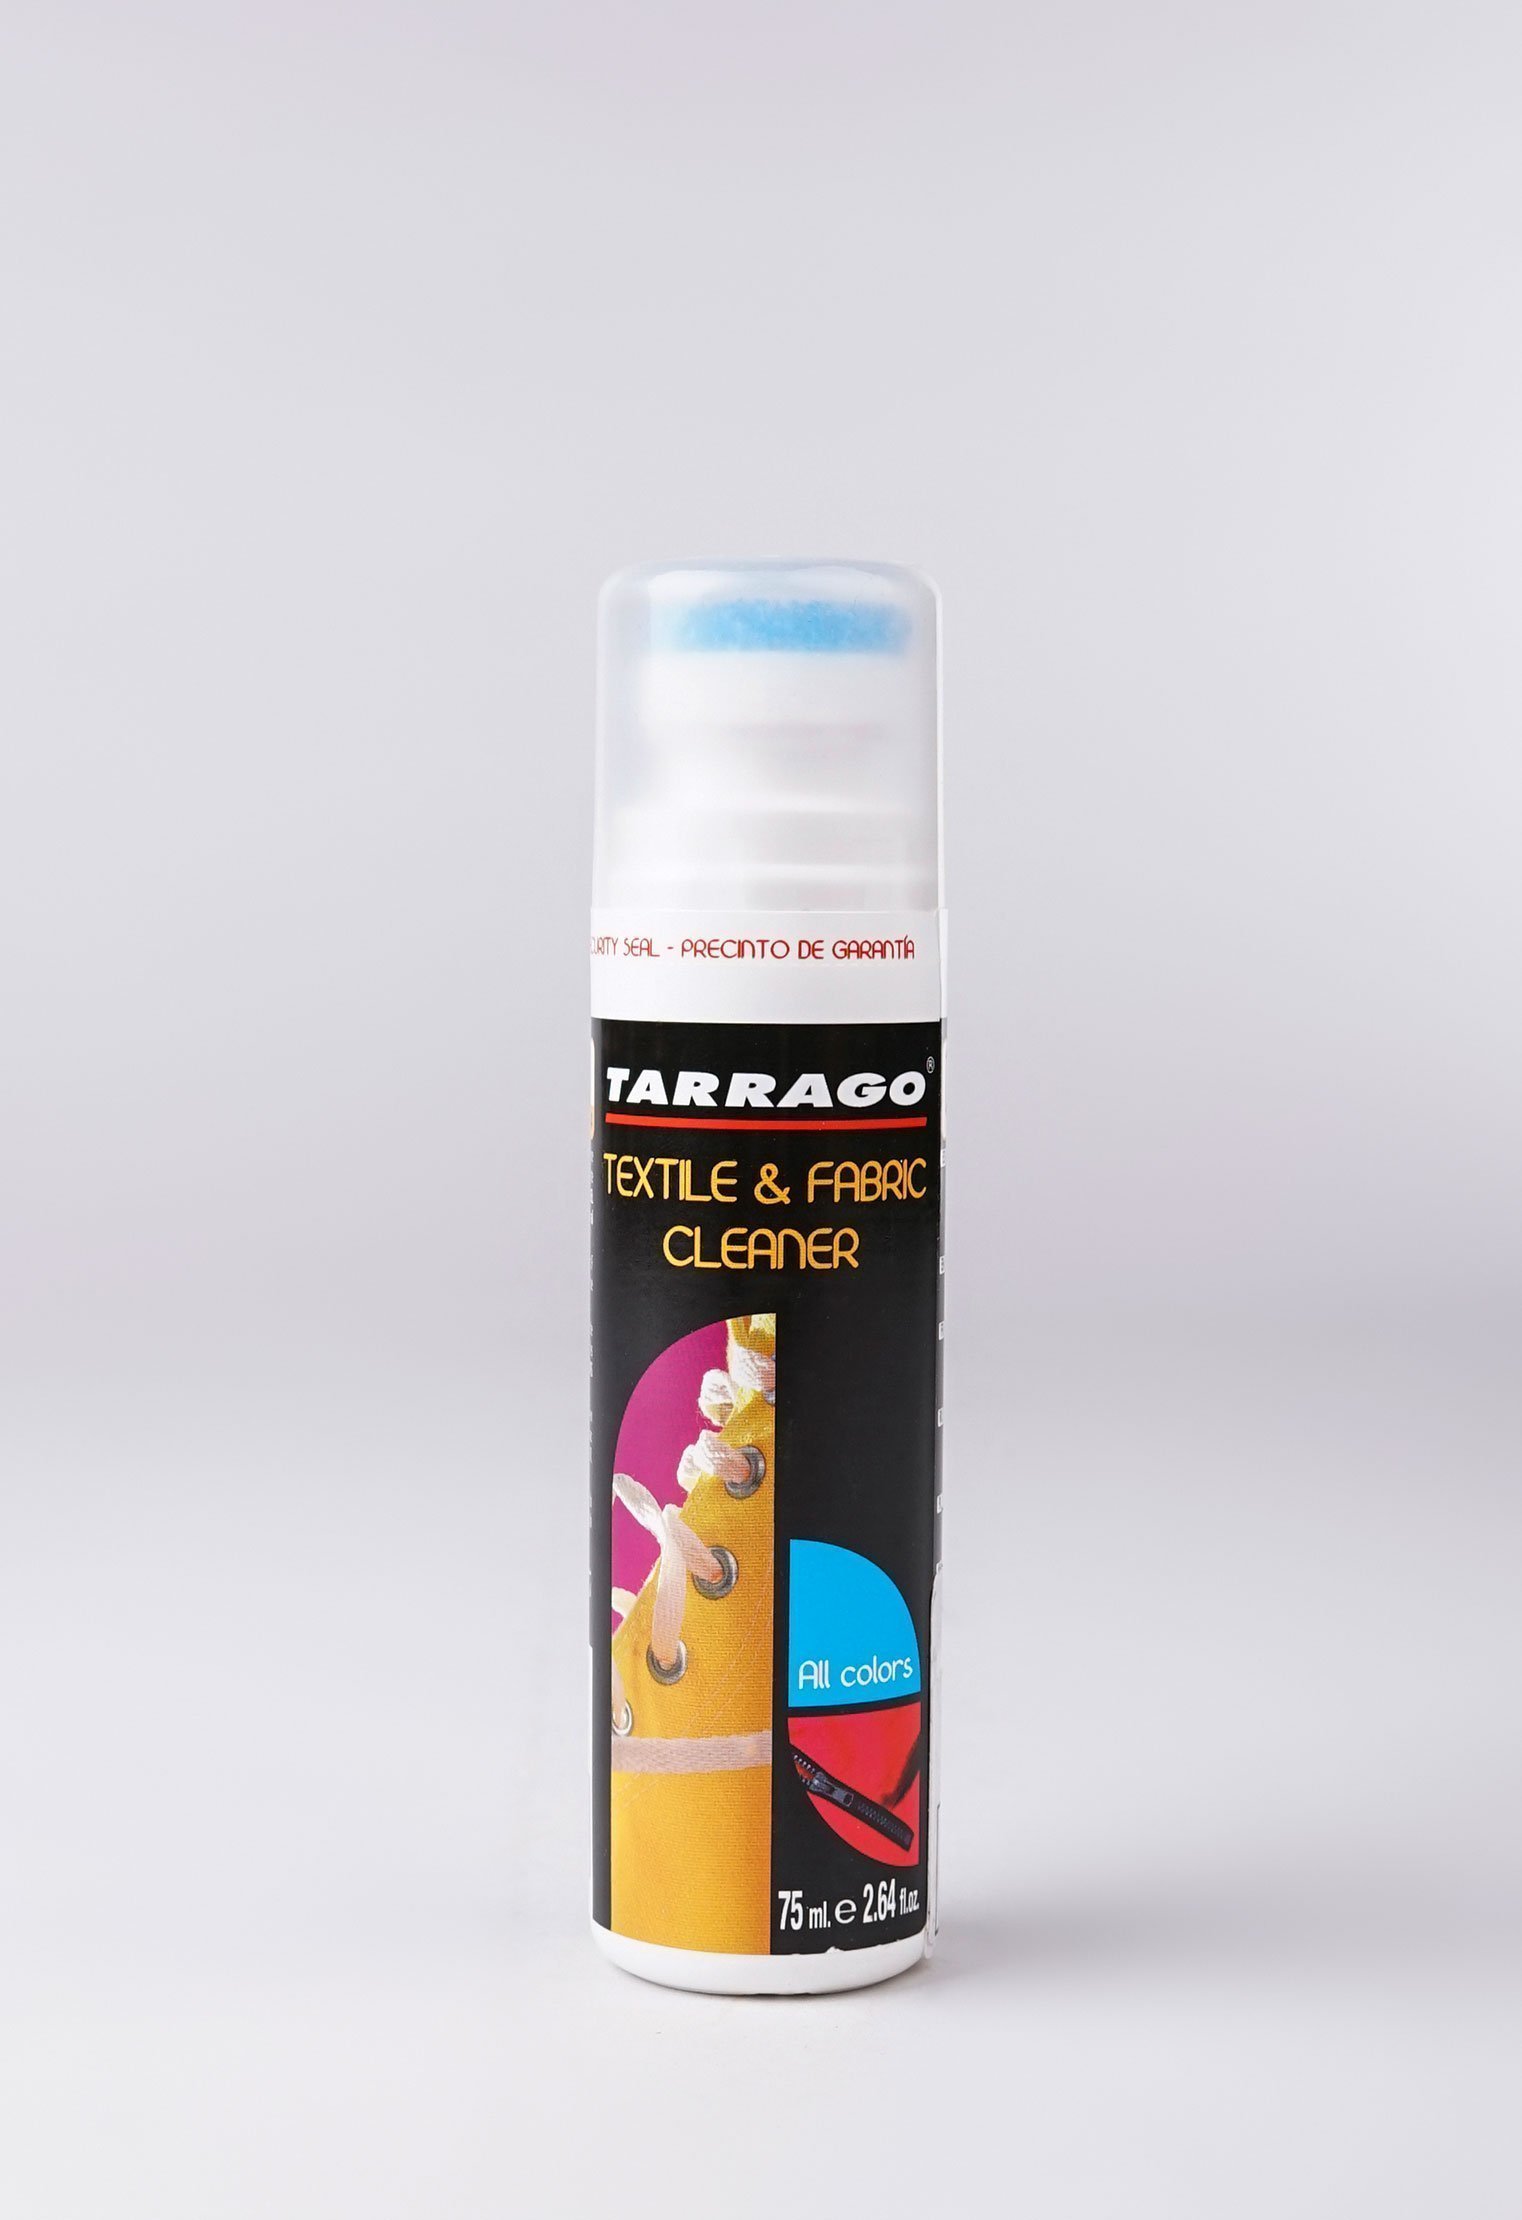 Шампуни и очистители 20-1057 TARRAGO - Очиститель для текстиля TEXTIL CLEANER, флакон, 75мл. очиститель для нубука tarrago nubuck cleaner 75мл